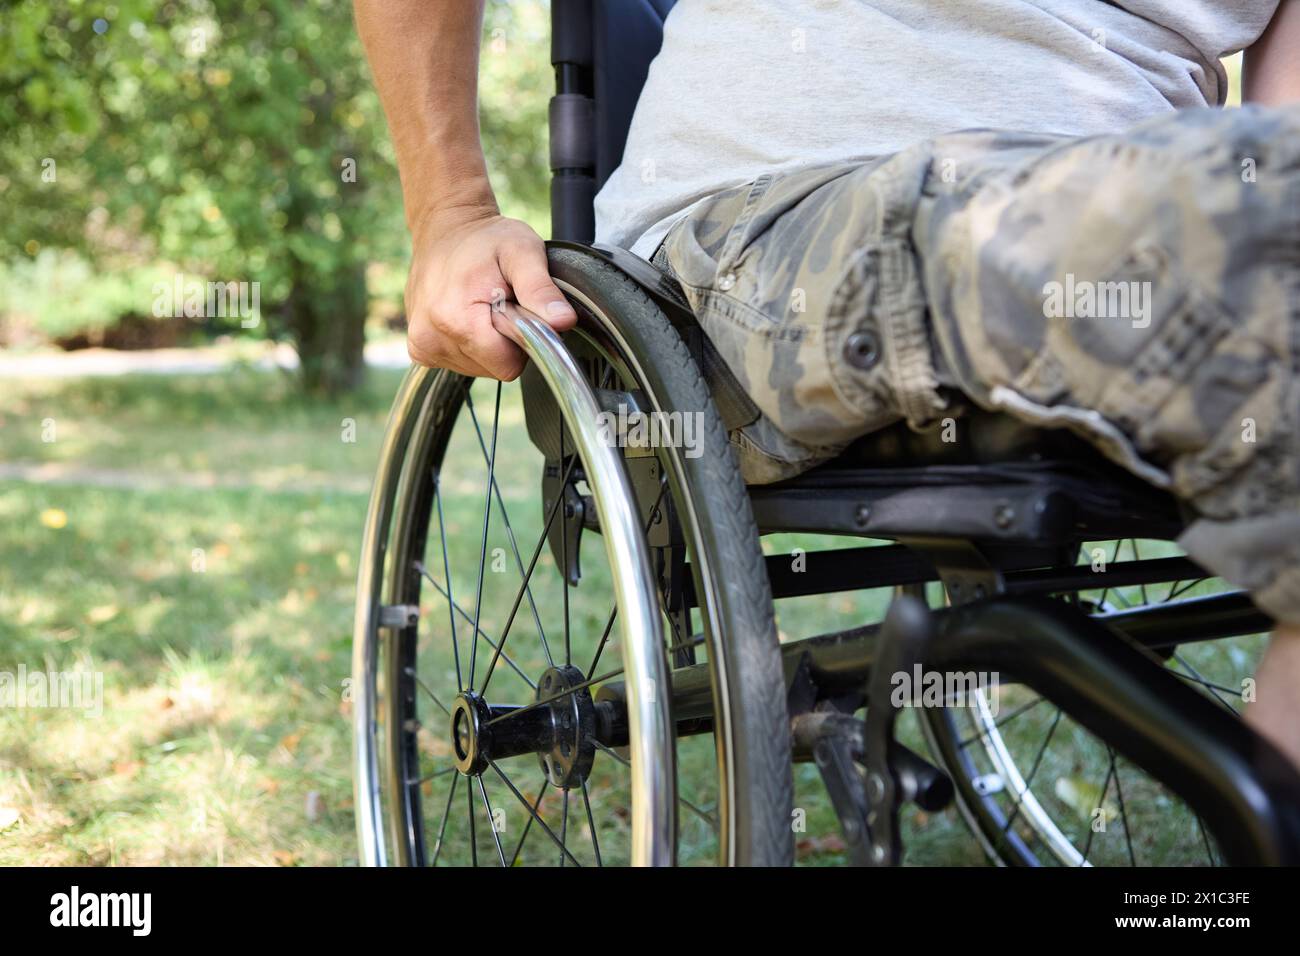 Eine Person, die einen Rollstuhl benutzt, wird im Freien festgehalten und konzentriert sich dabei auf unabhängige Mobilität und die Natur in einer ruhigen Parklandschaft. Stockfoto